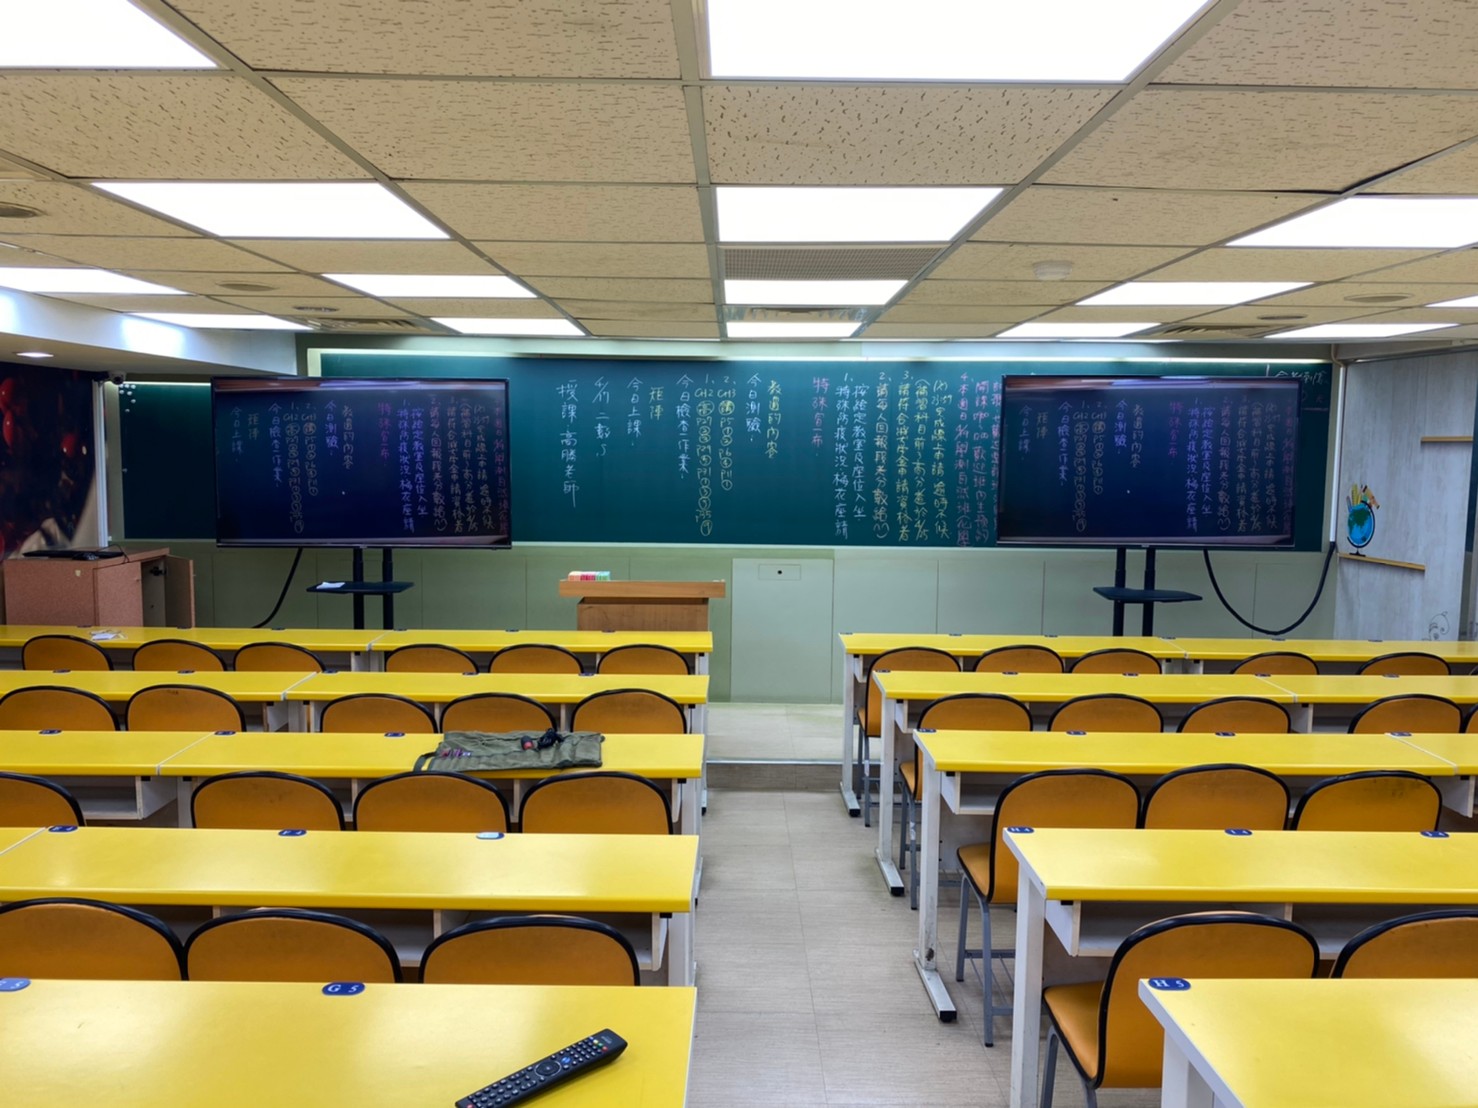 【補教錄播系統】新北市新莊知名補習班同步教學設備規劃建置